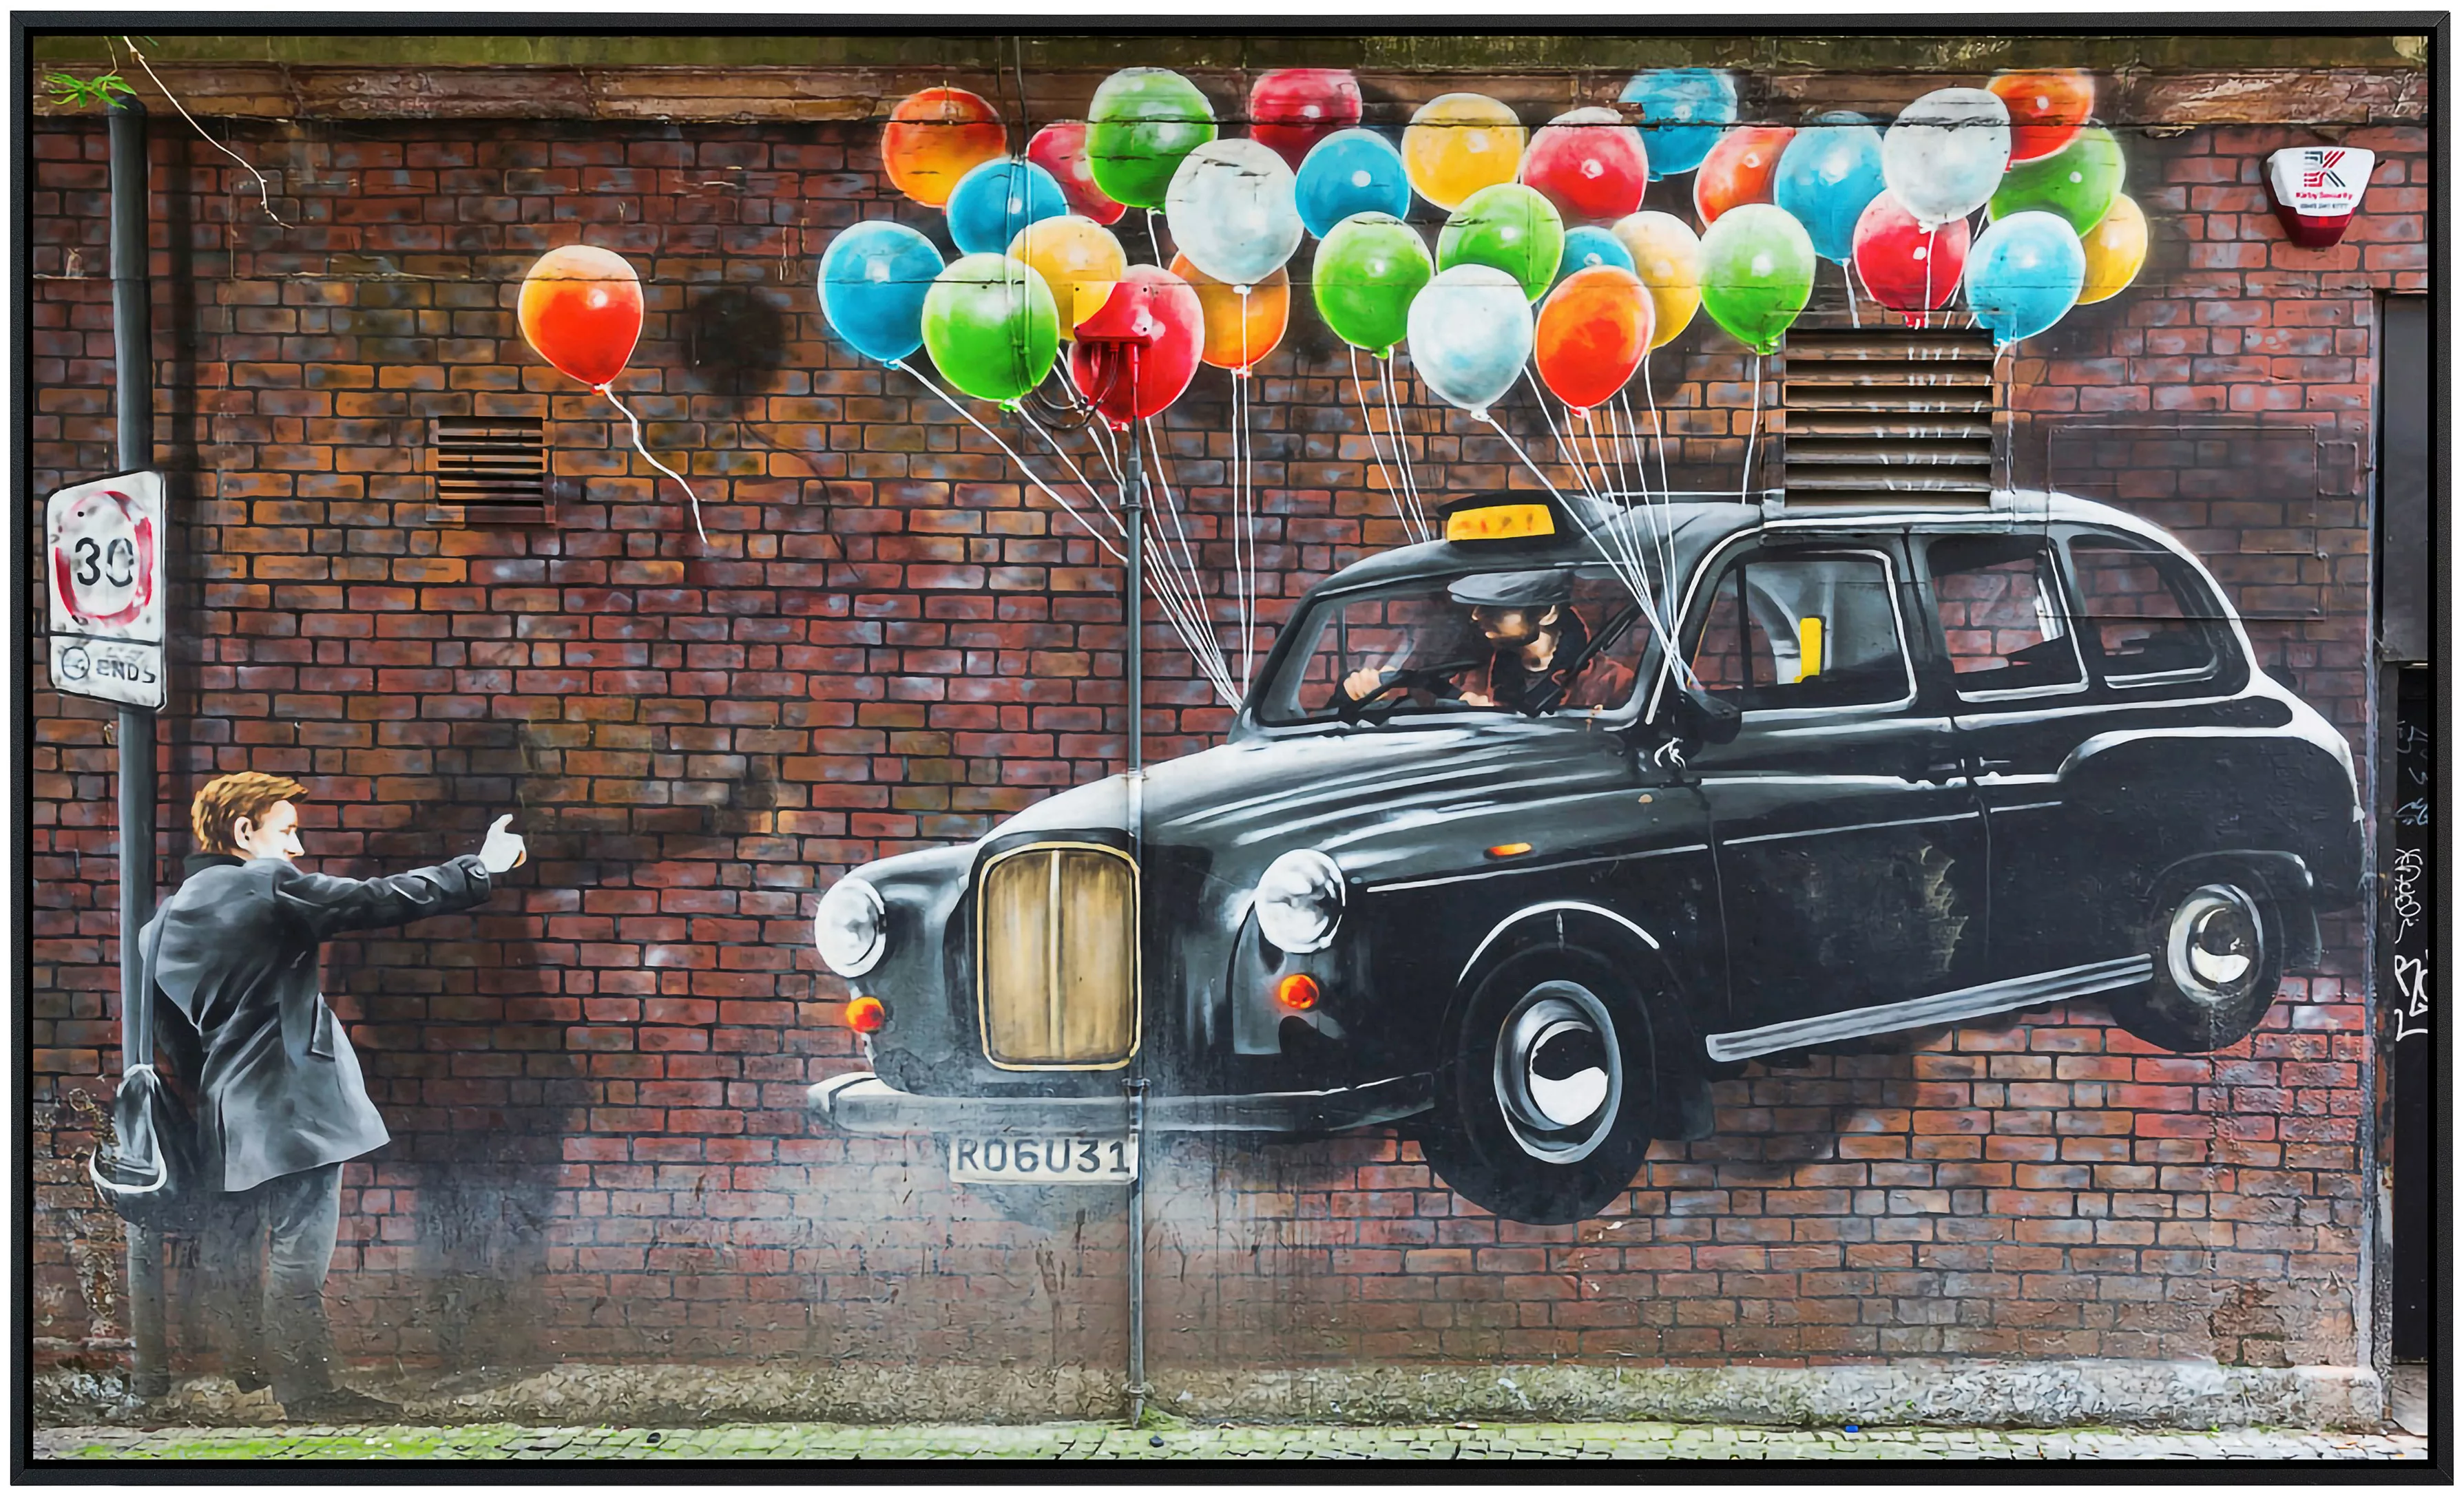 Papermoon Infrarotheizung »Street Art in Glasgow« günstig online kaufen